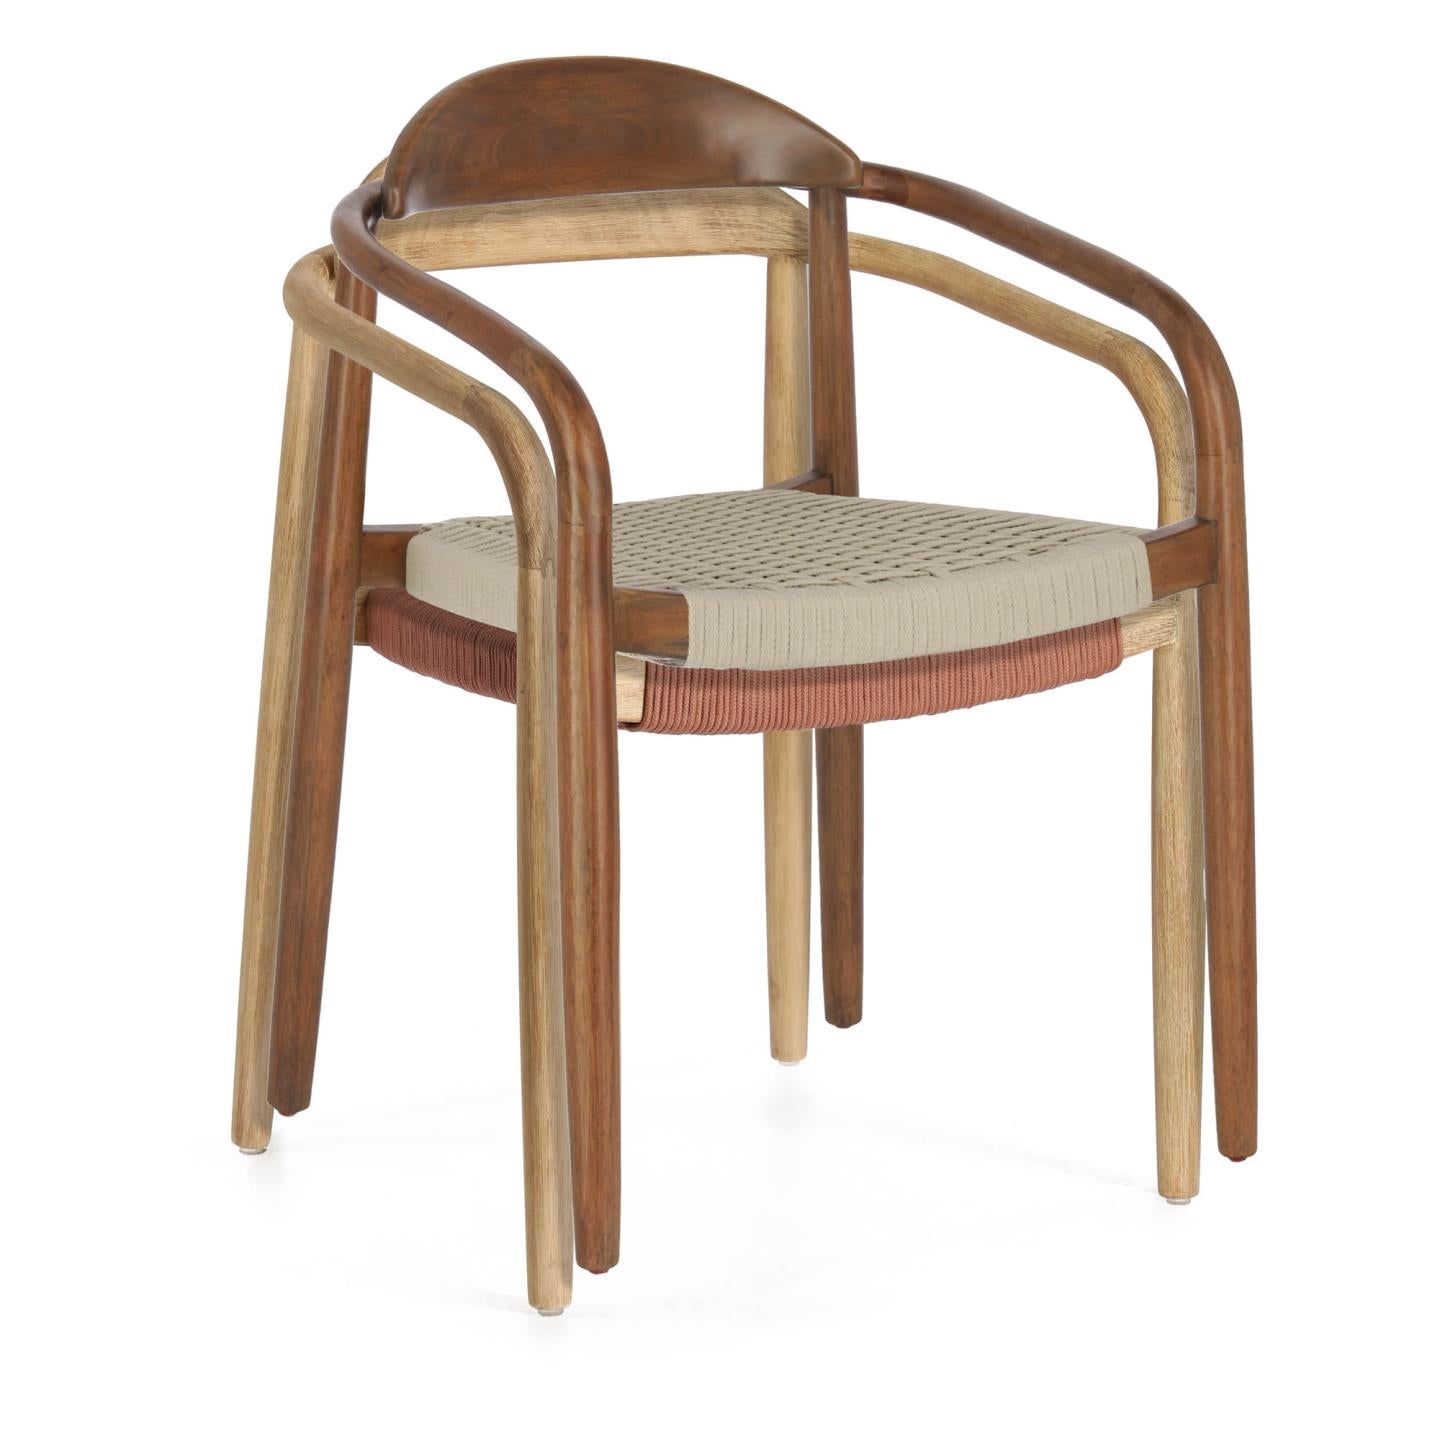 Nina egymásba rakható szék tömör akácfából, diófa kivitelben, bézs színű kötéllel az ülőlapon